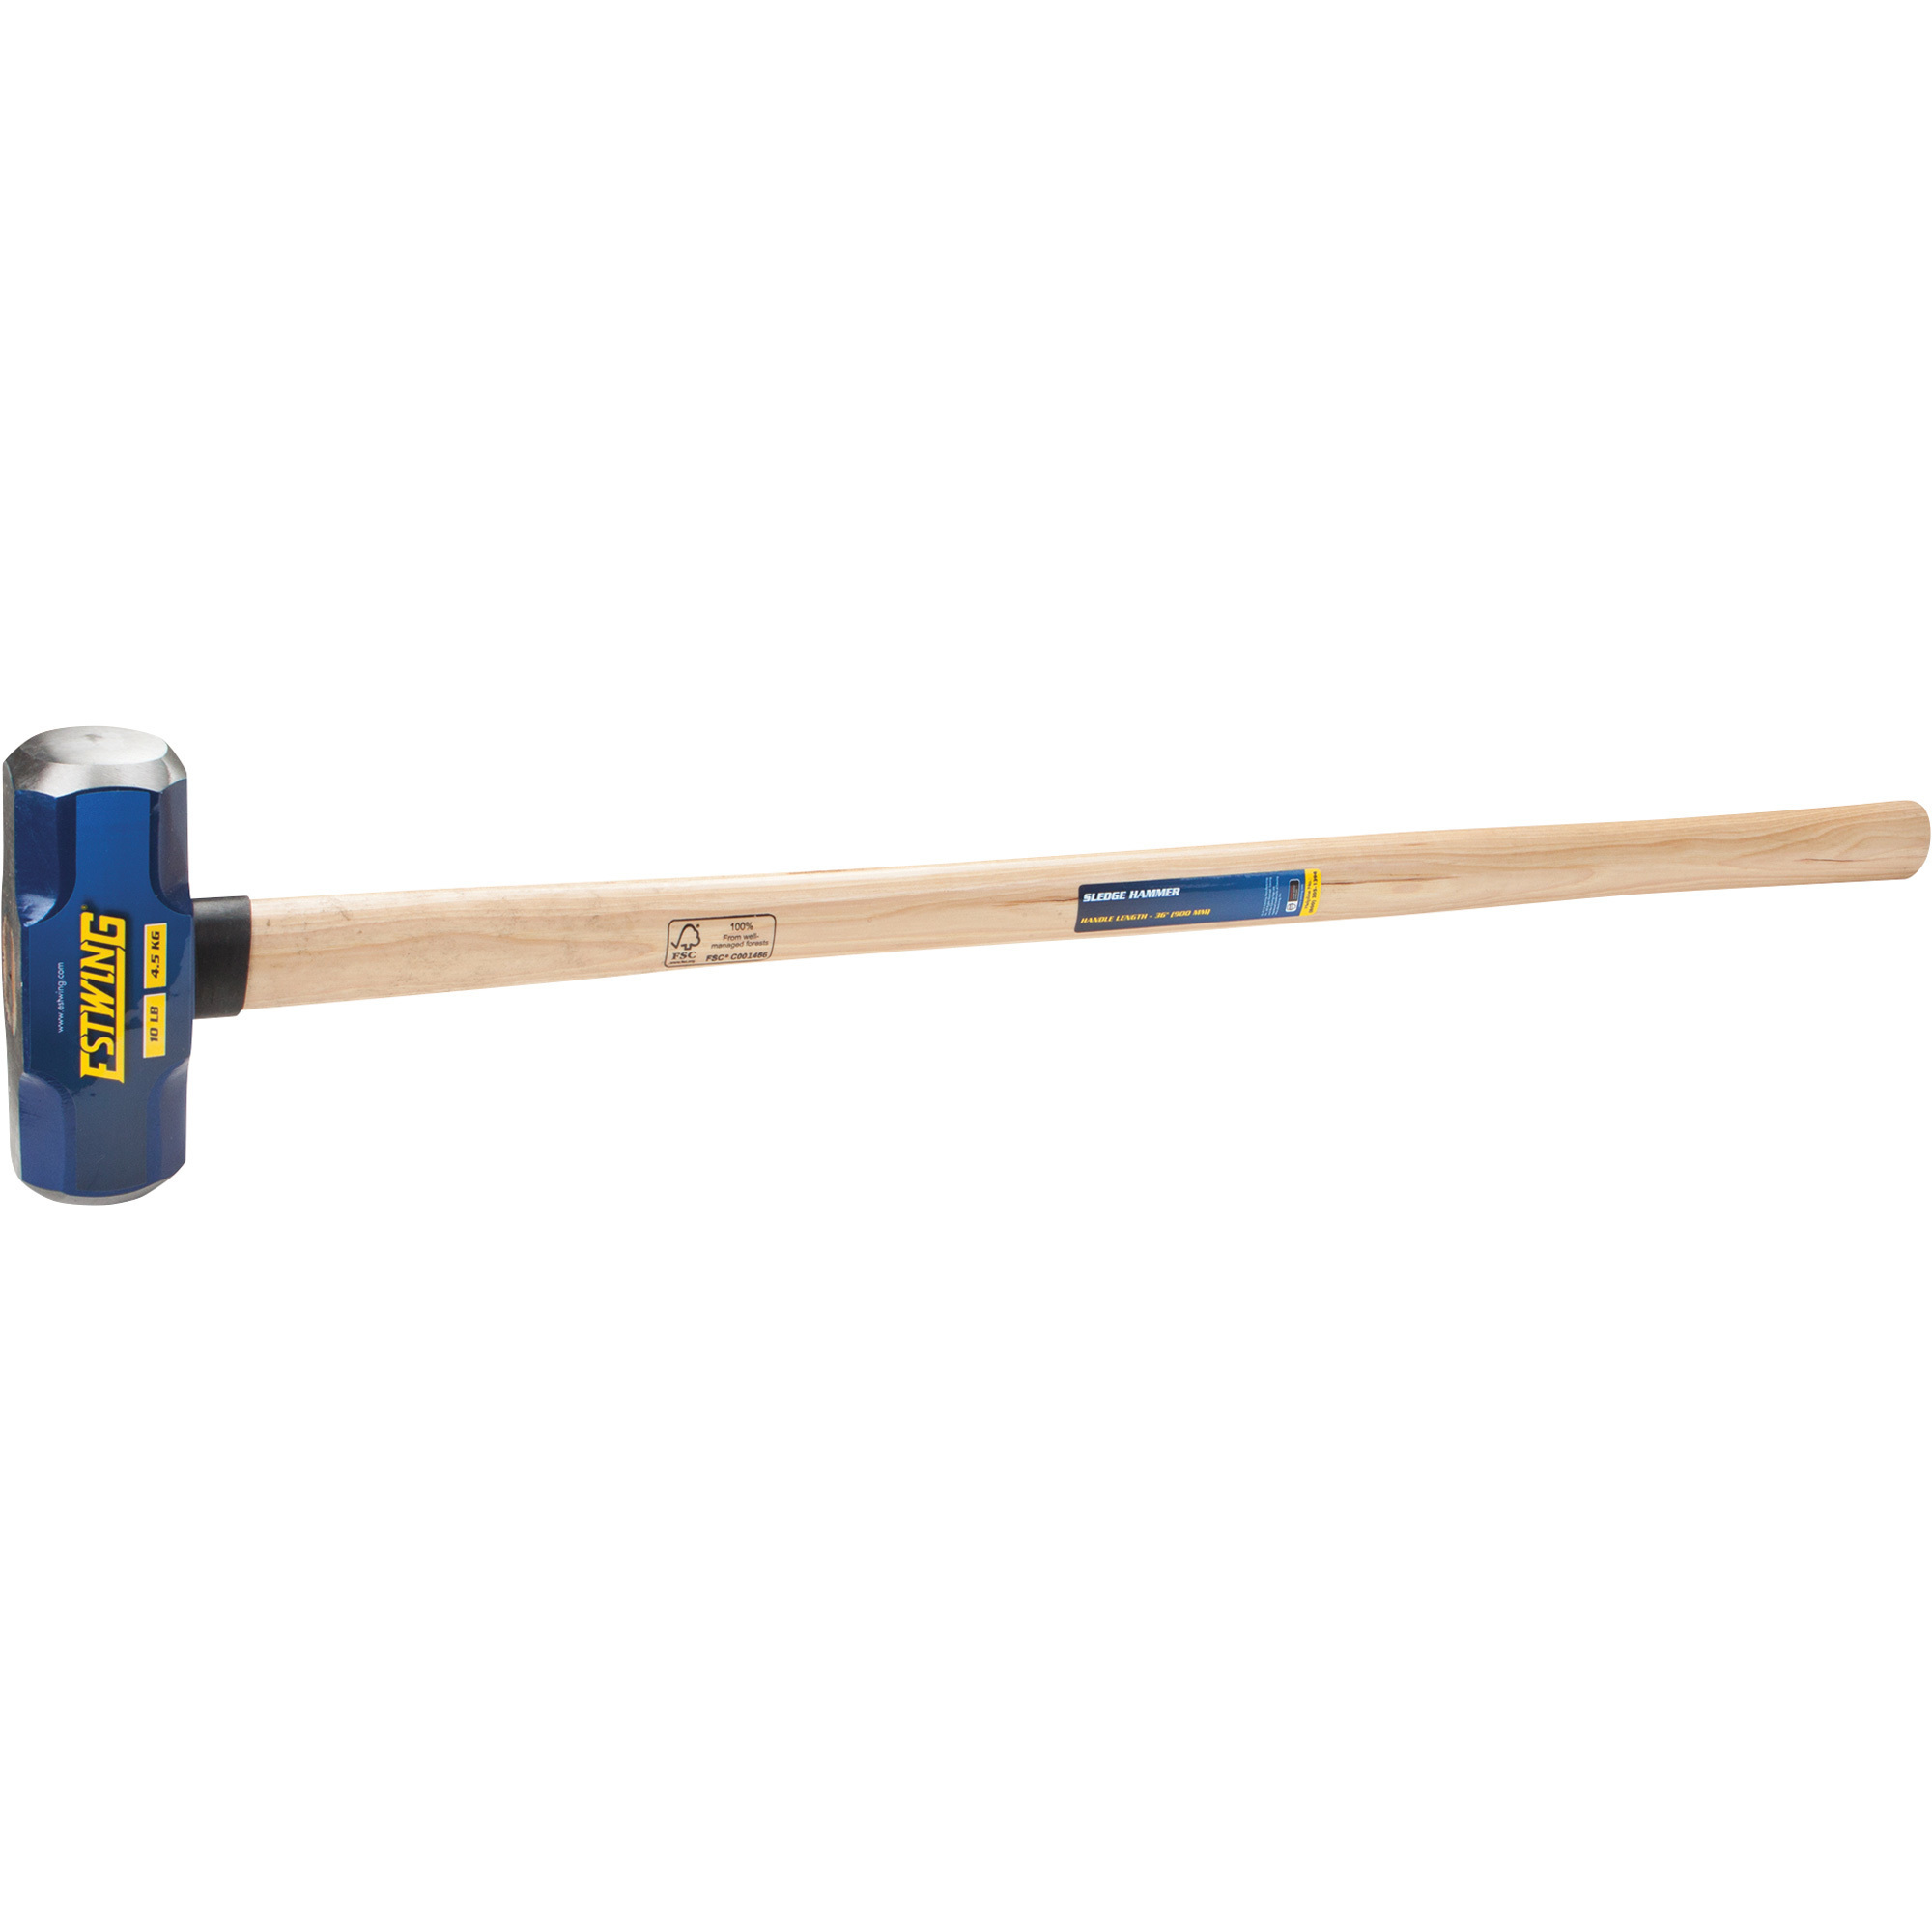 Estwing Sledge Hammer with Wood Handle, 10-Lb., 36Inch L, Model ESH-1036W